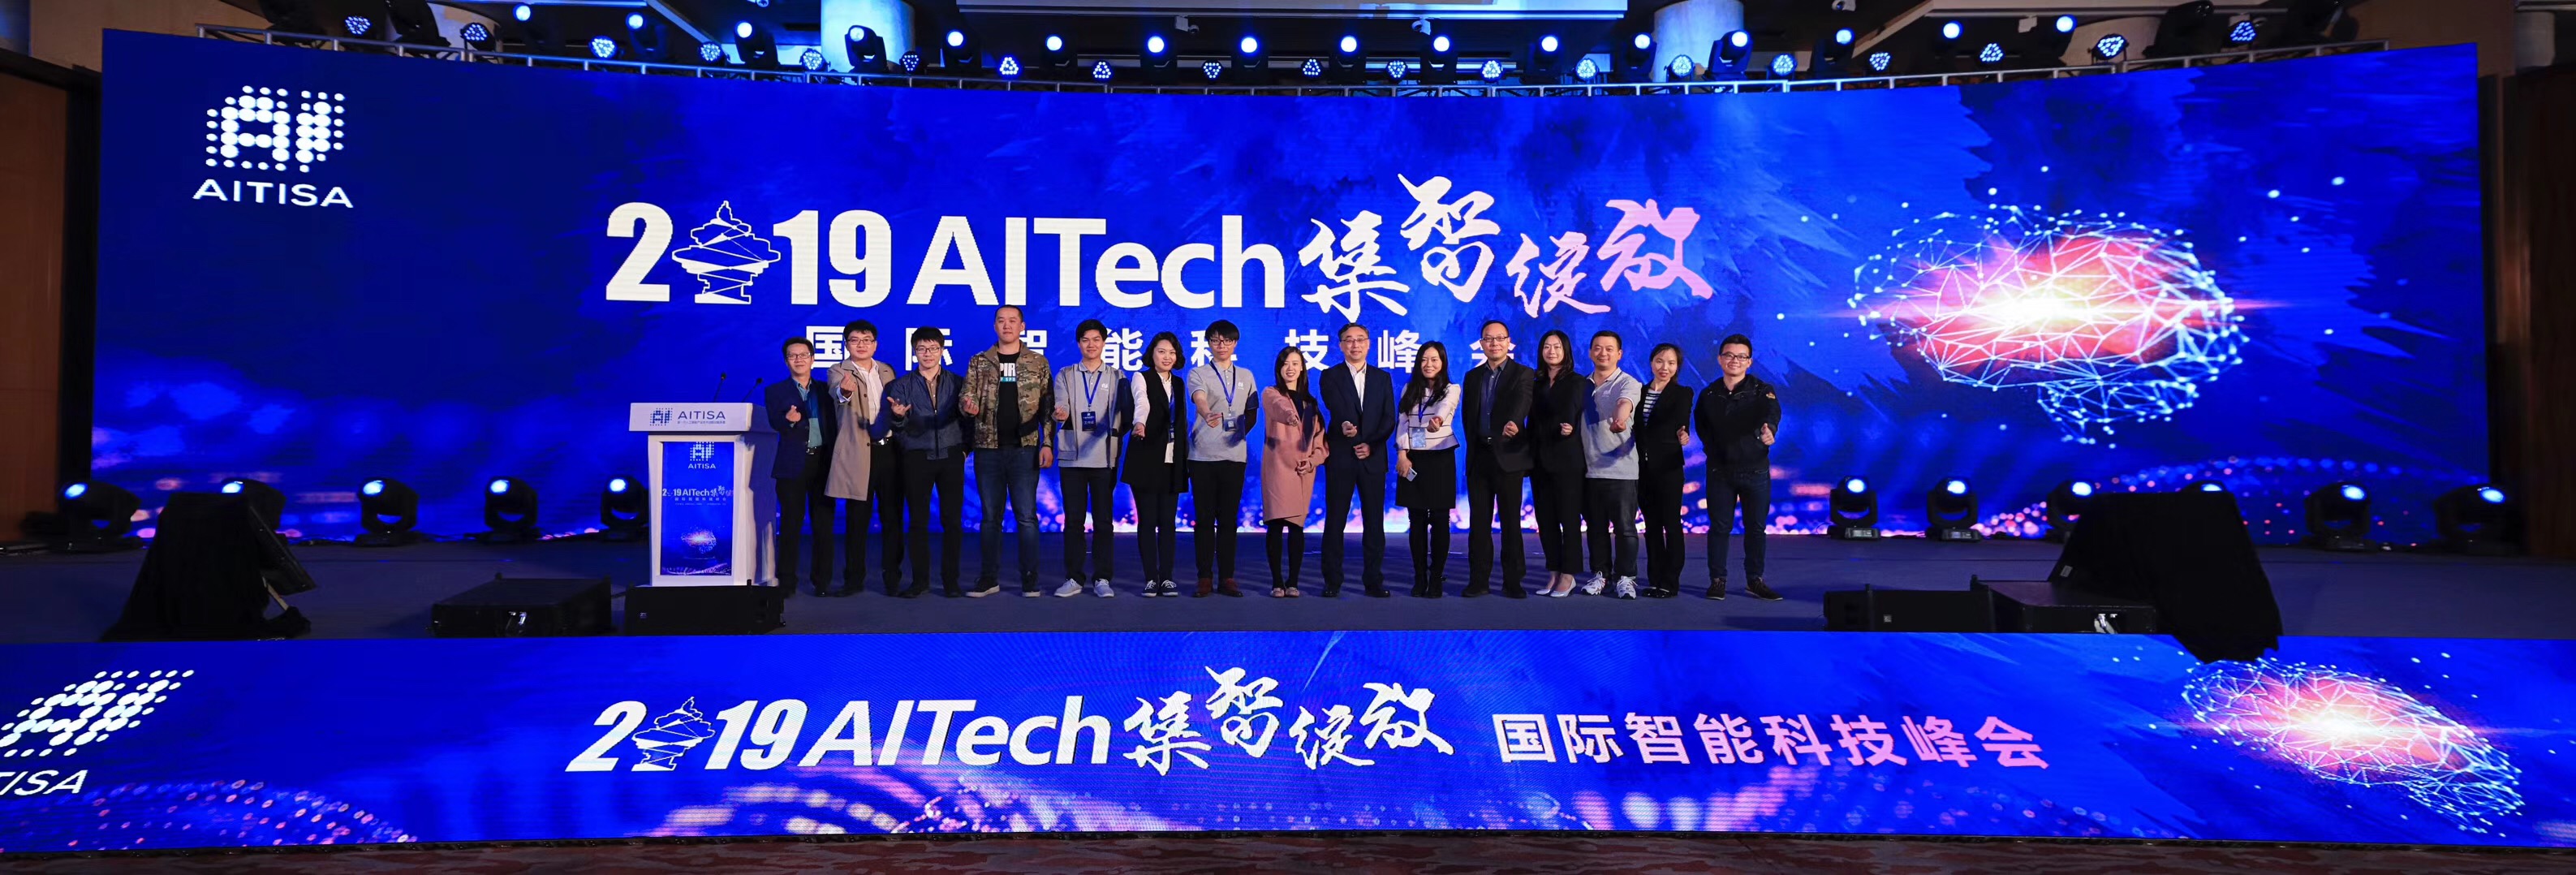 2019协办AITech